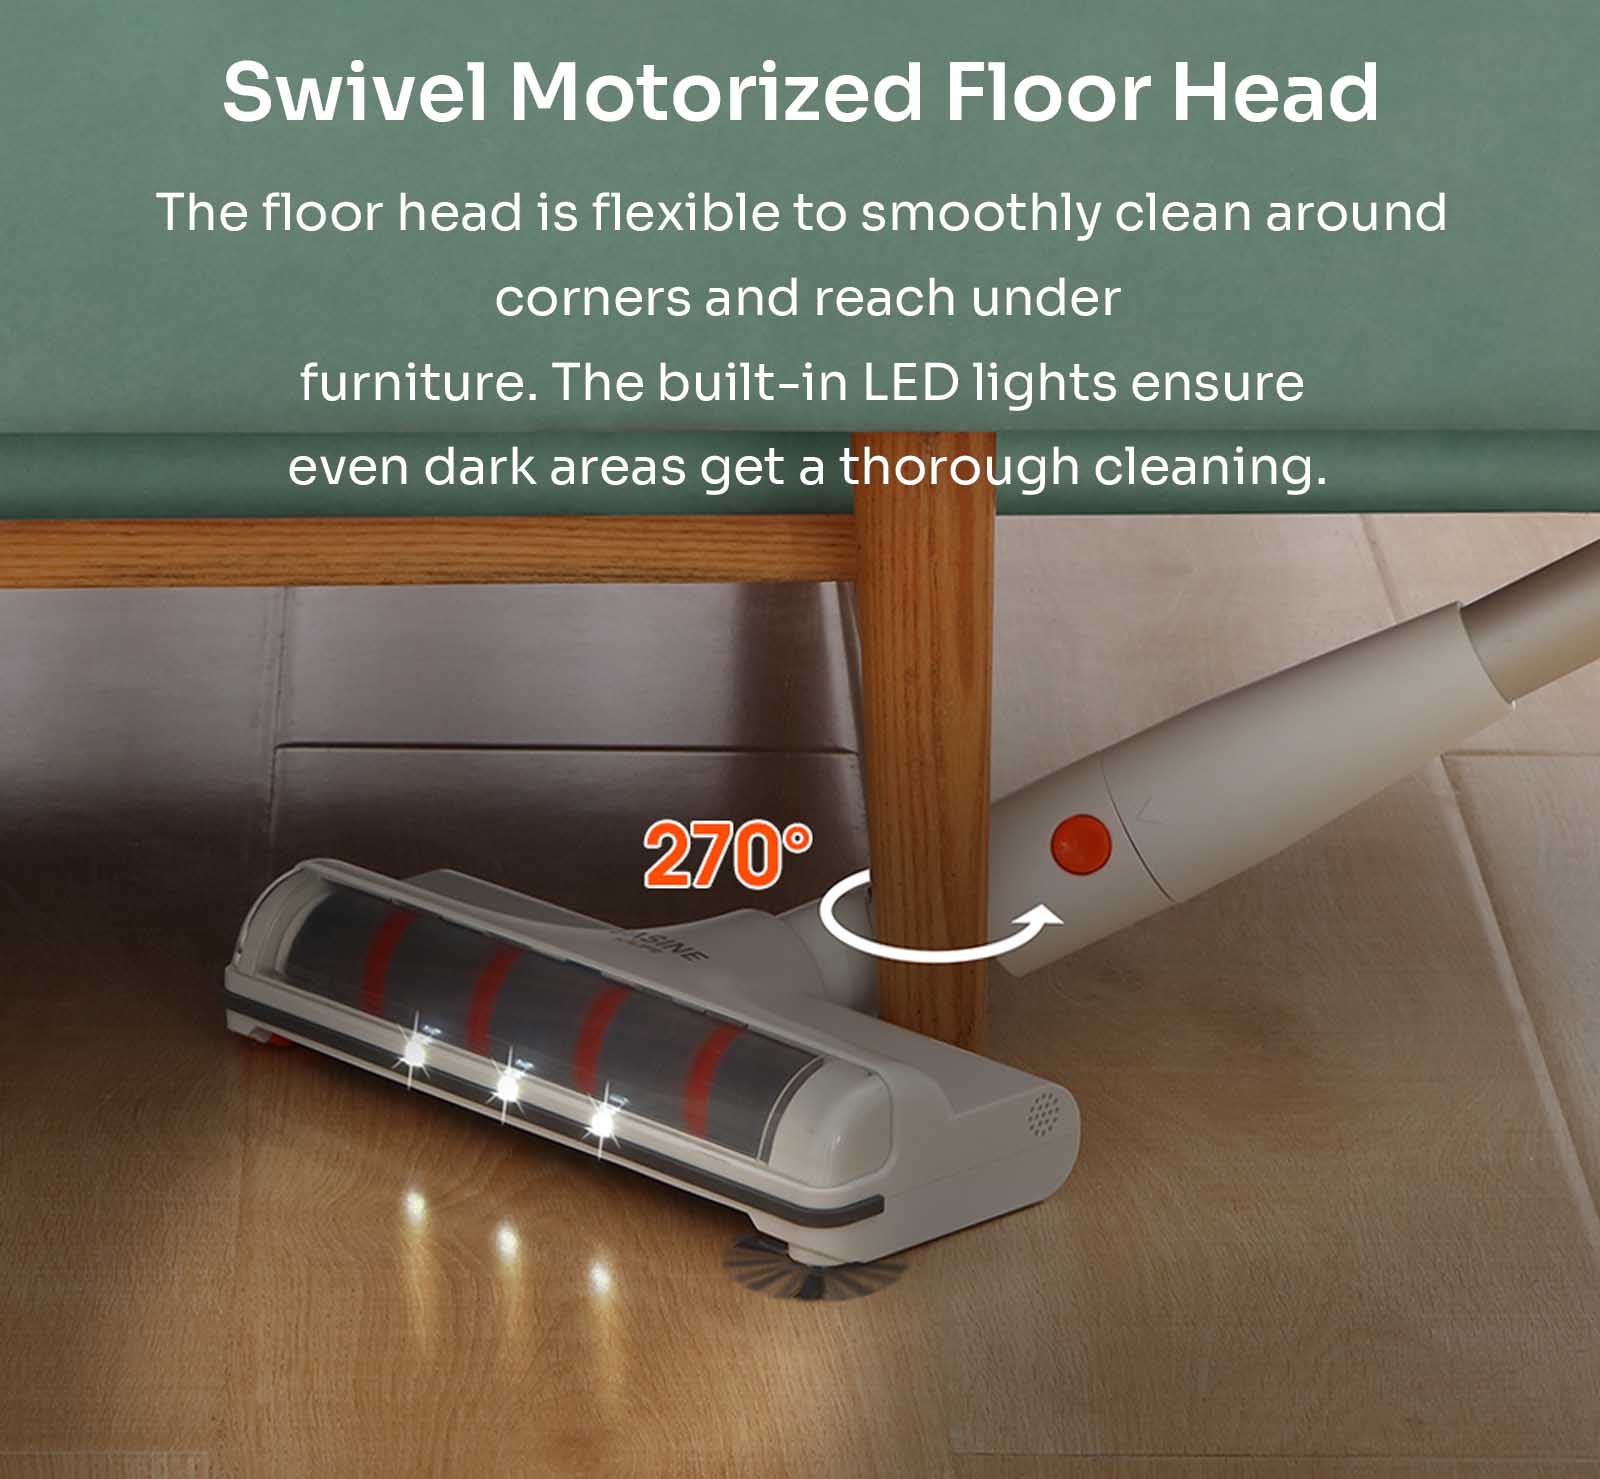 Swivel motorized floor head